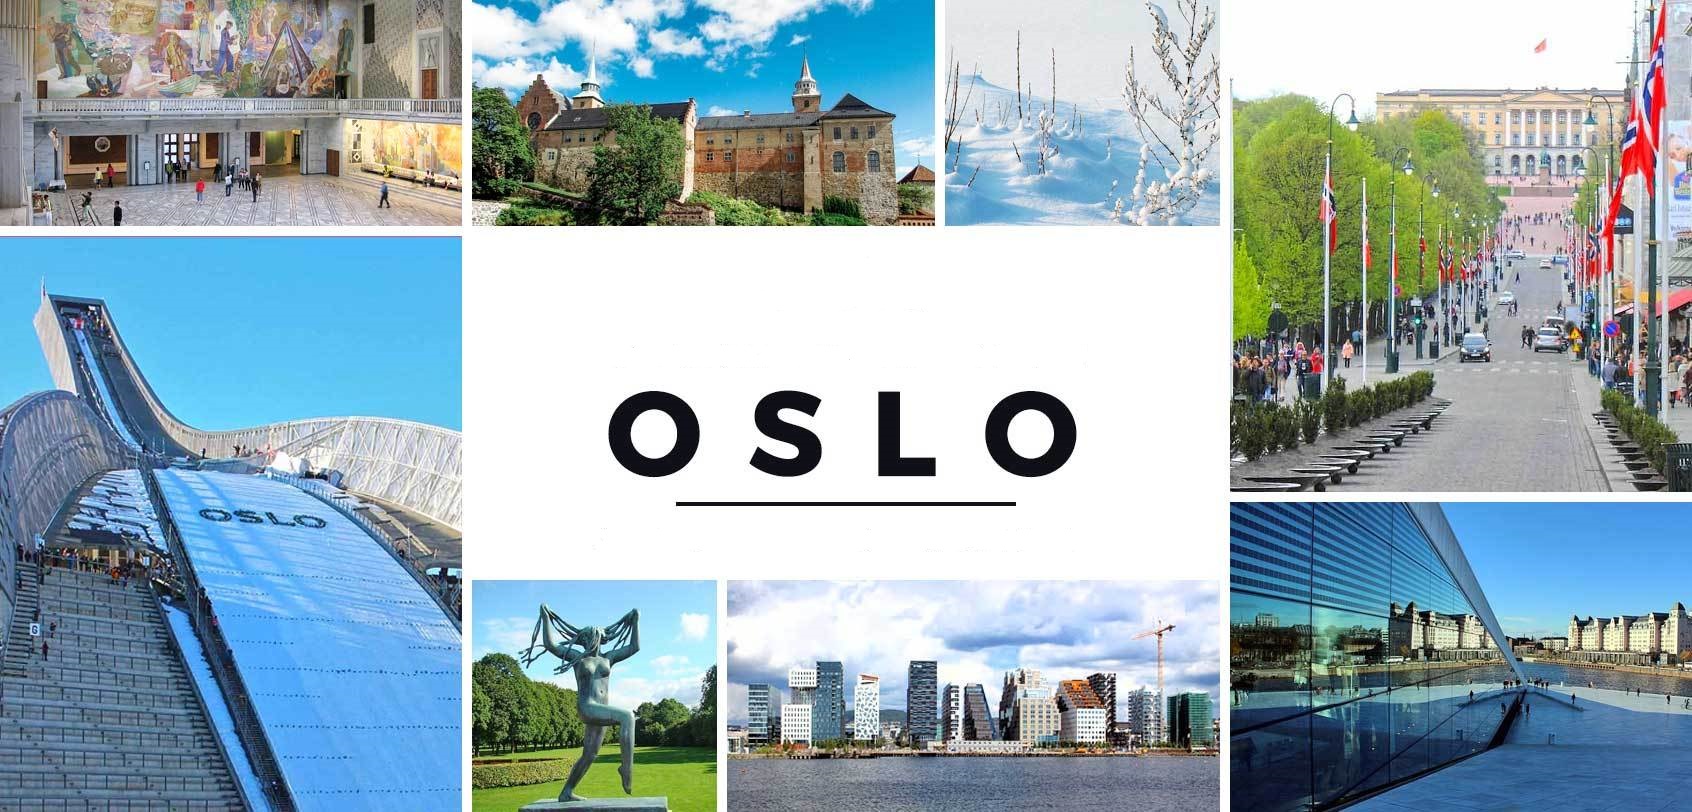 الاماكن السياحية في أوسلو 